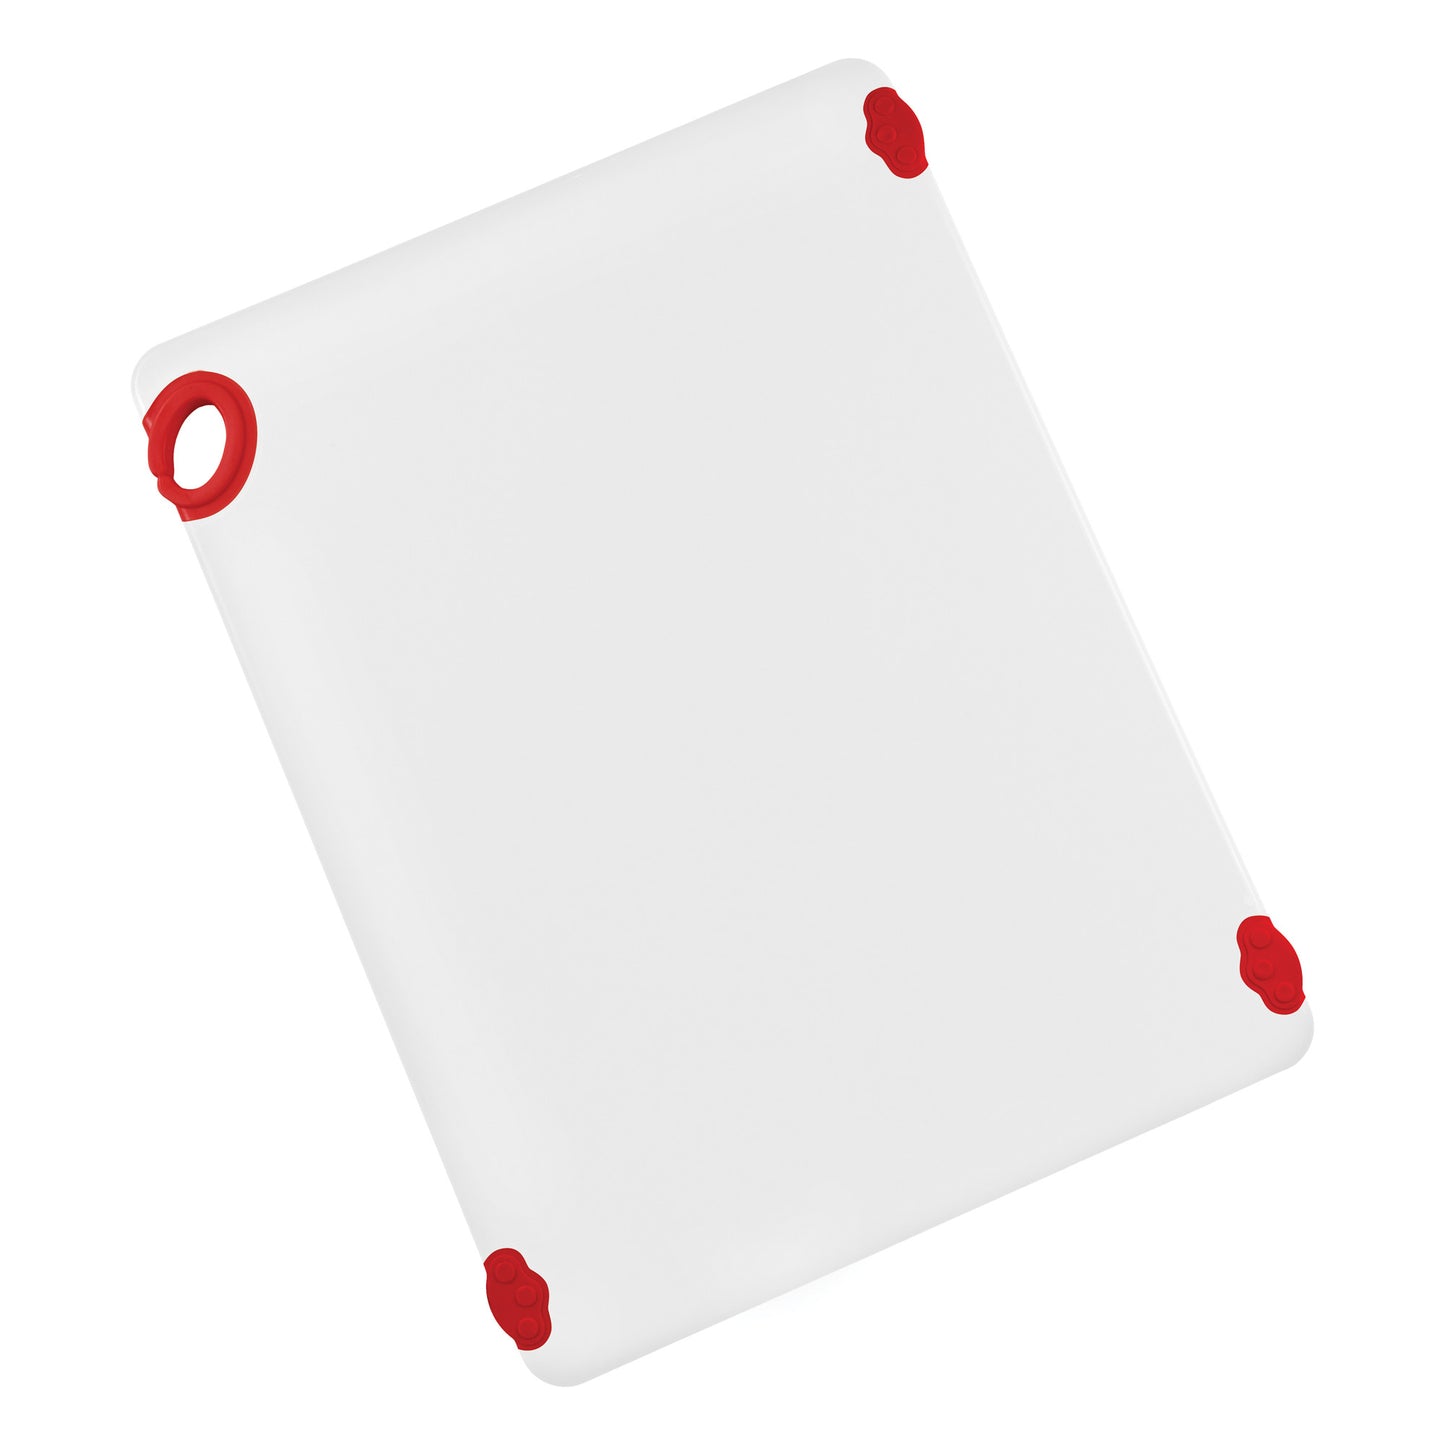 CBN-1824RD - STATIK BOARD Cutting Boards - 18 x 24, Red